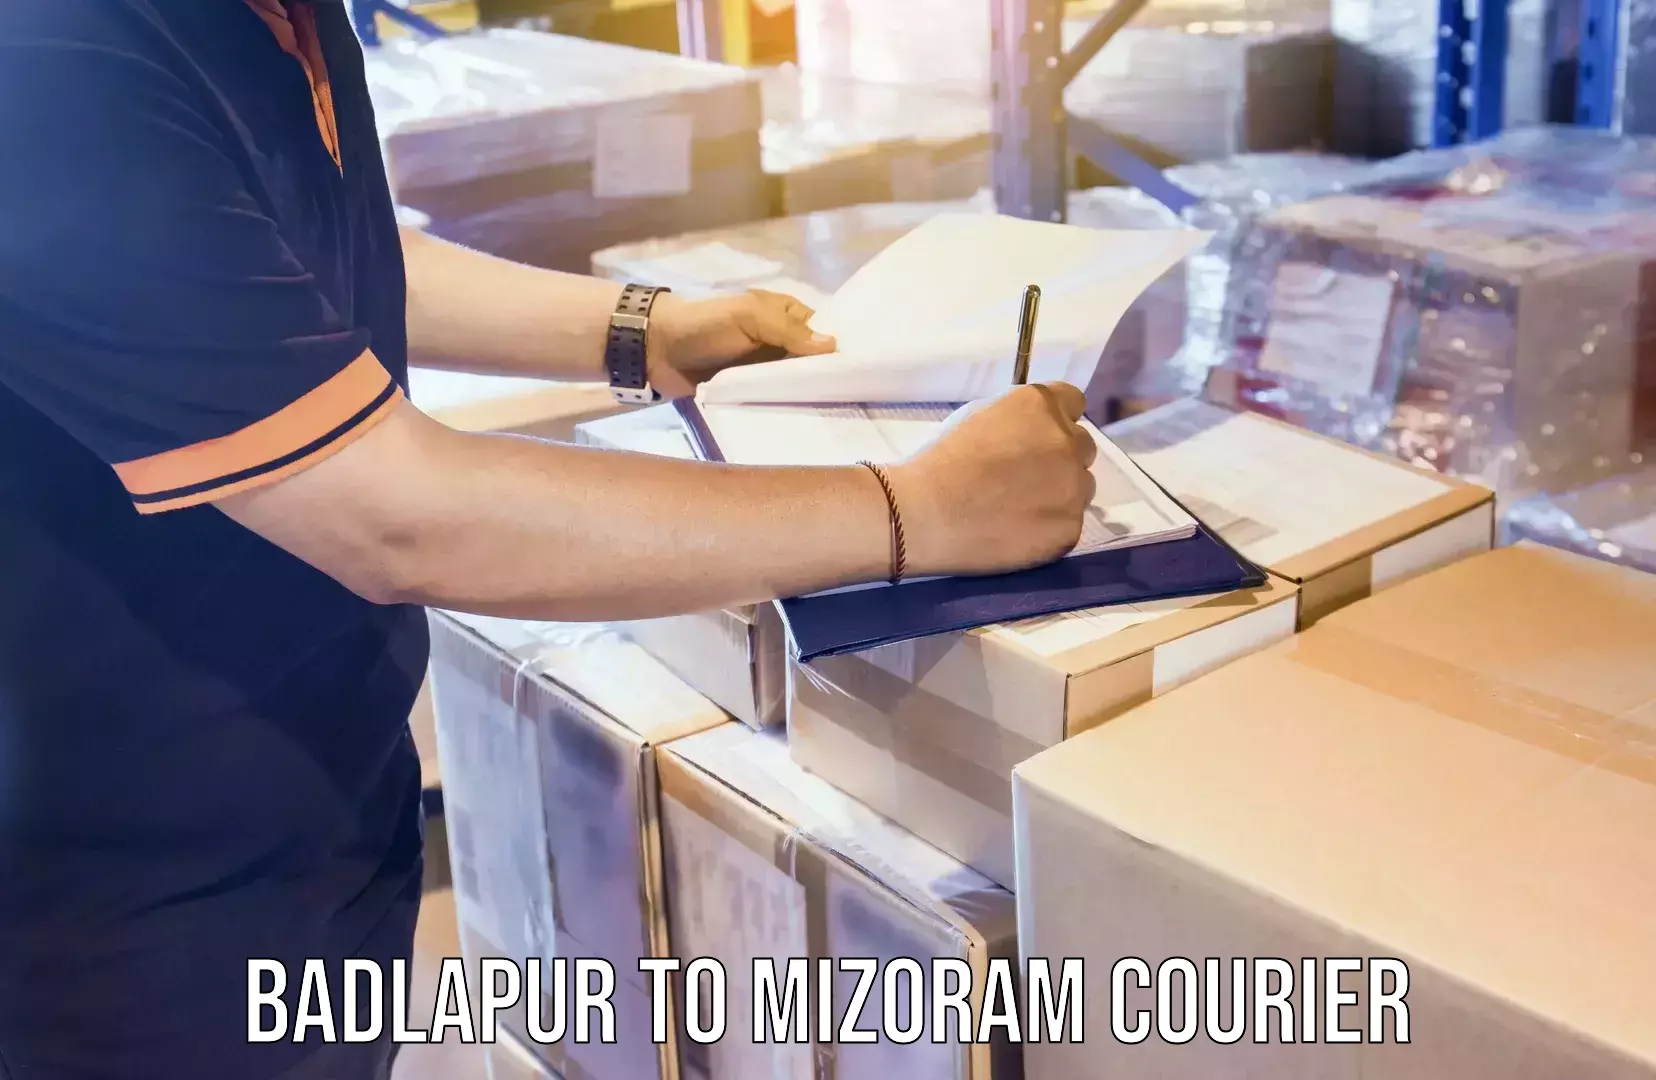 Courier app Badlapur to Mizoram